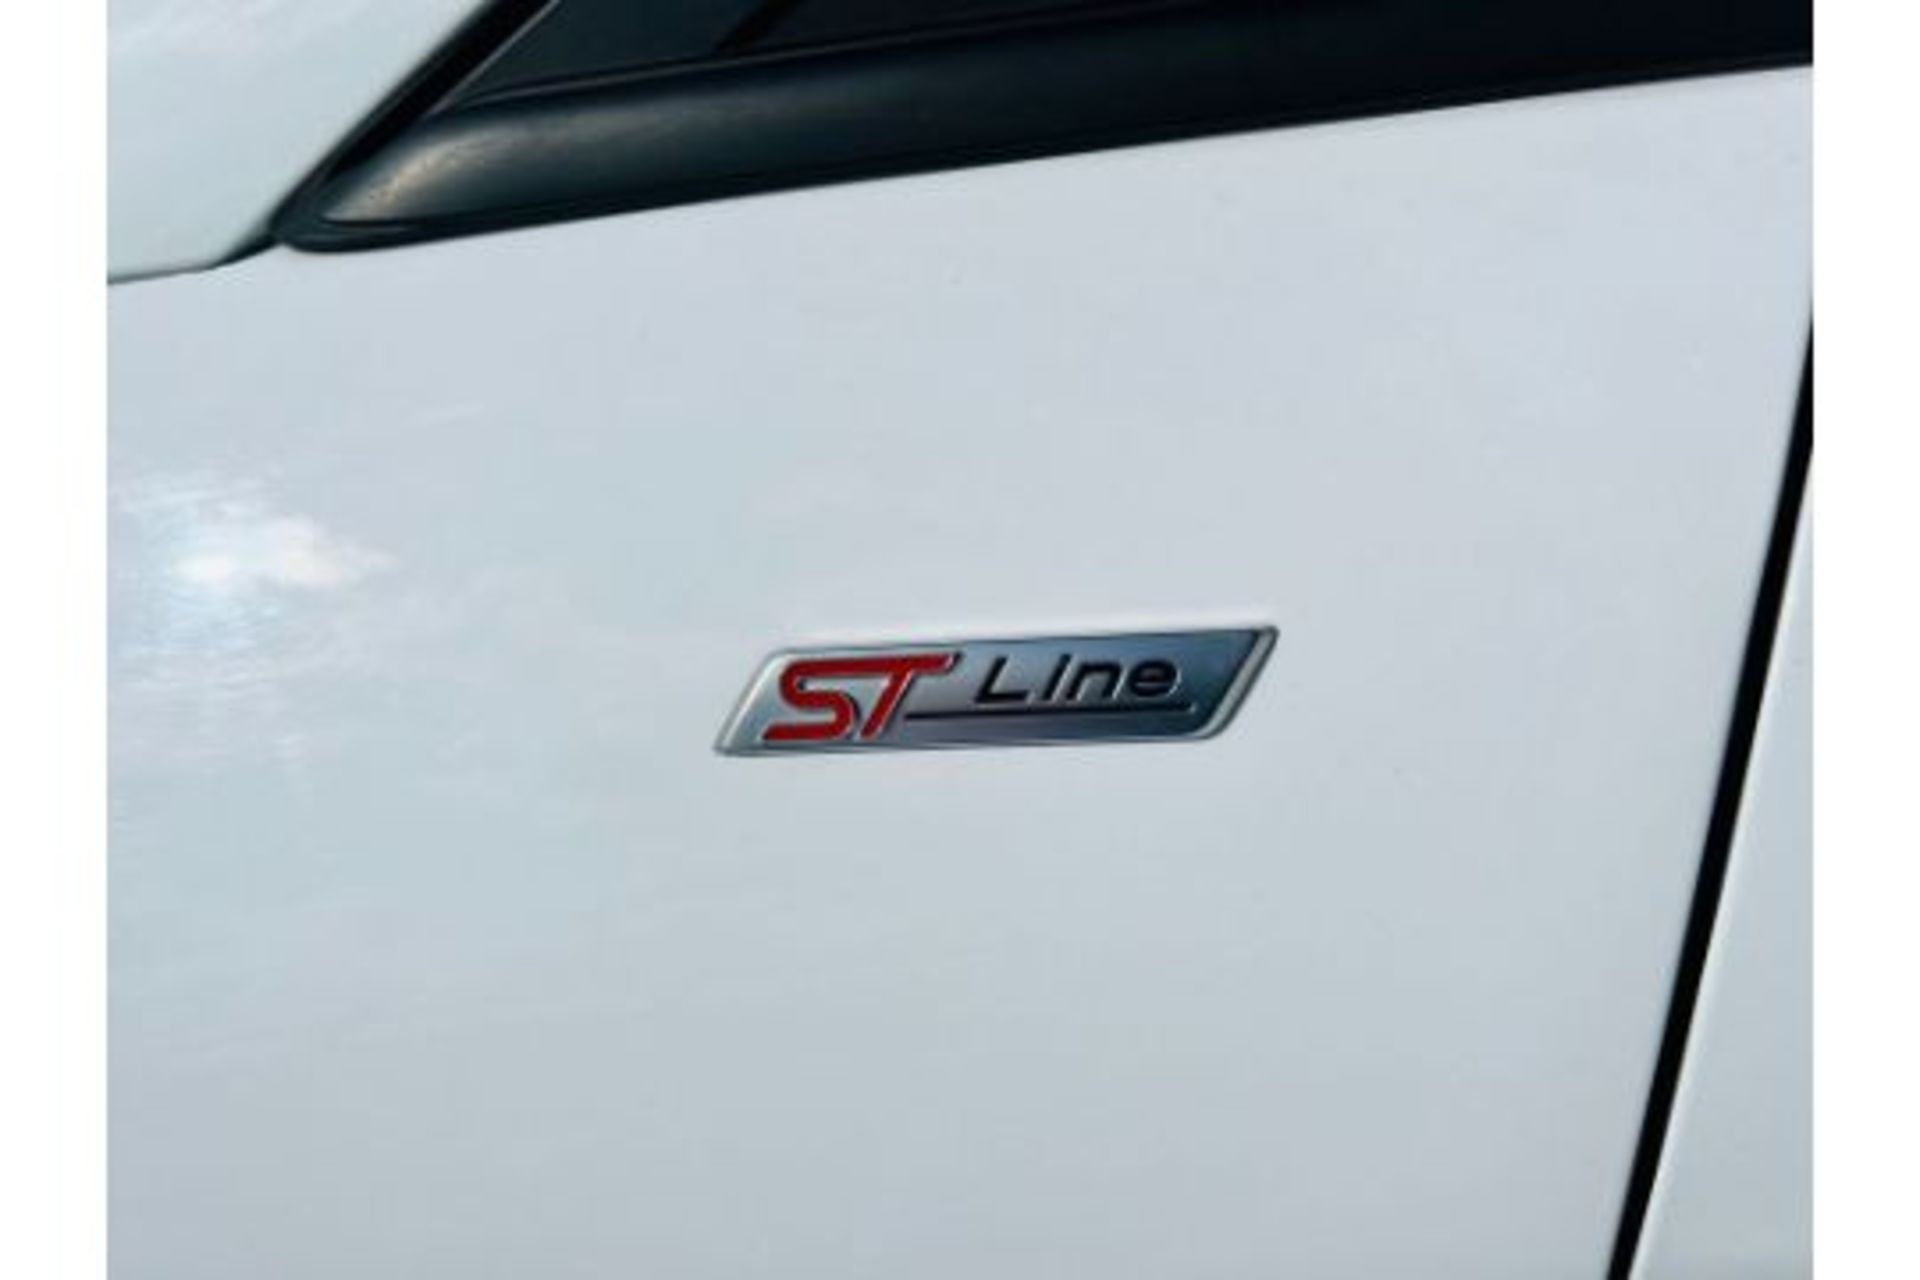 Ford Fiesta " ST-LINE EDITION TURBO " 5dr Hatchback - 2020 20 Reg - 1 Owner - ONLY 65K - Image 6 of 6